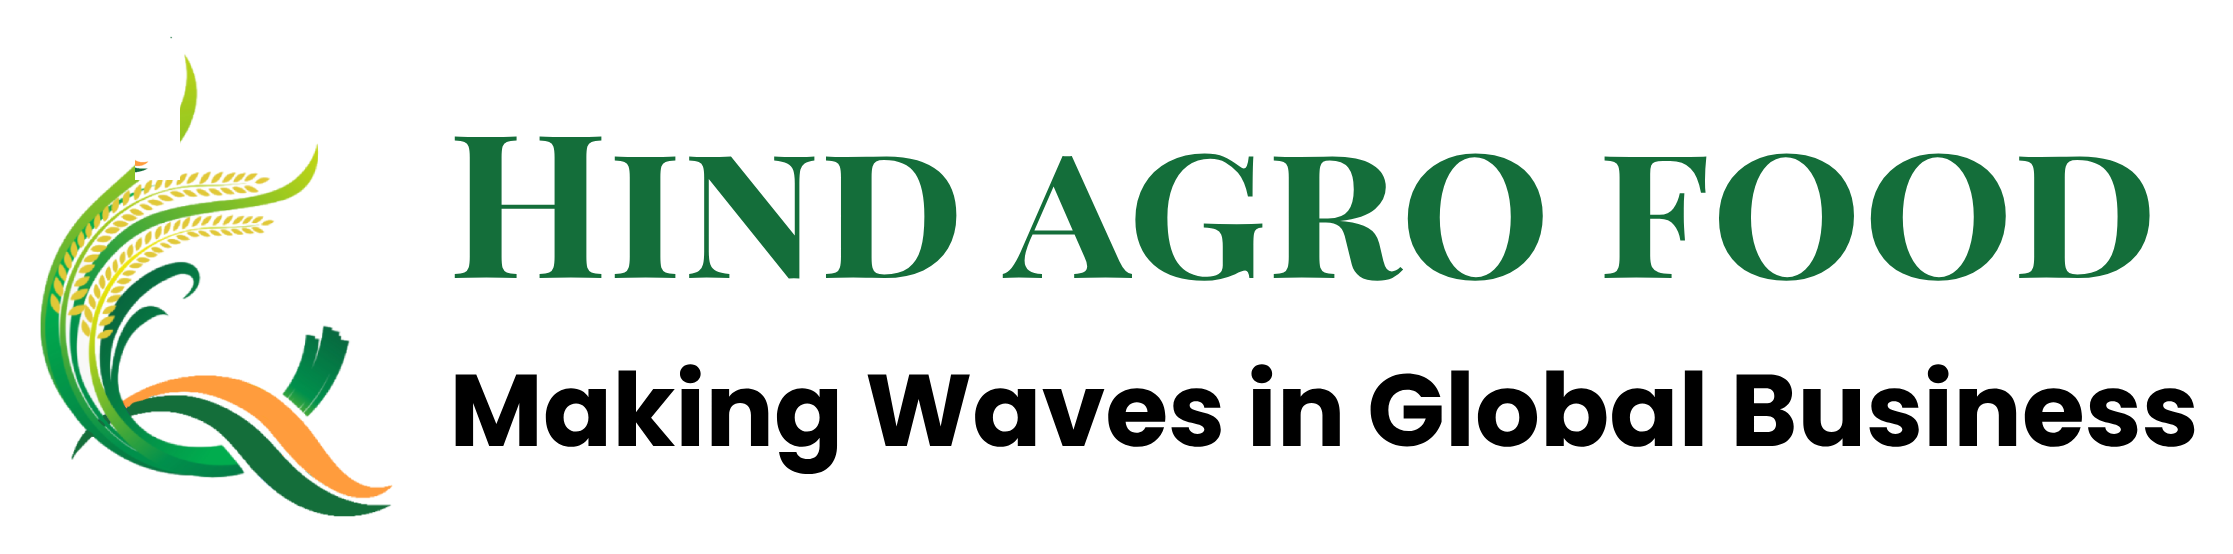 HIND AGRO FOOD Logo